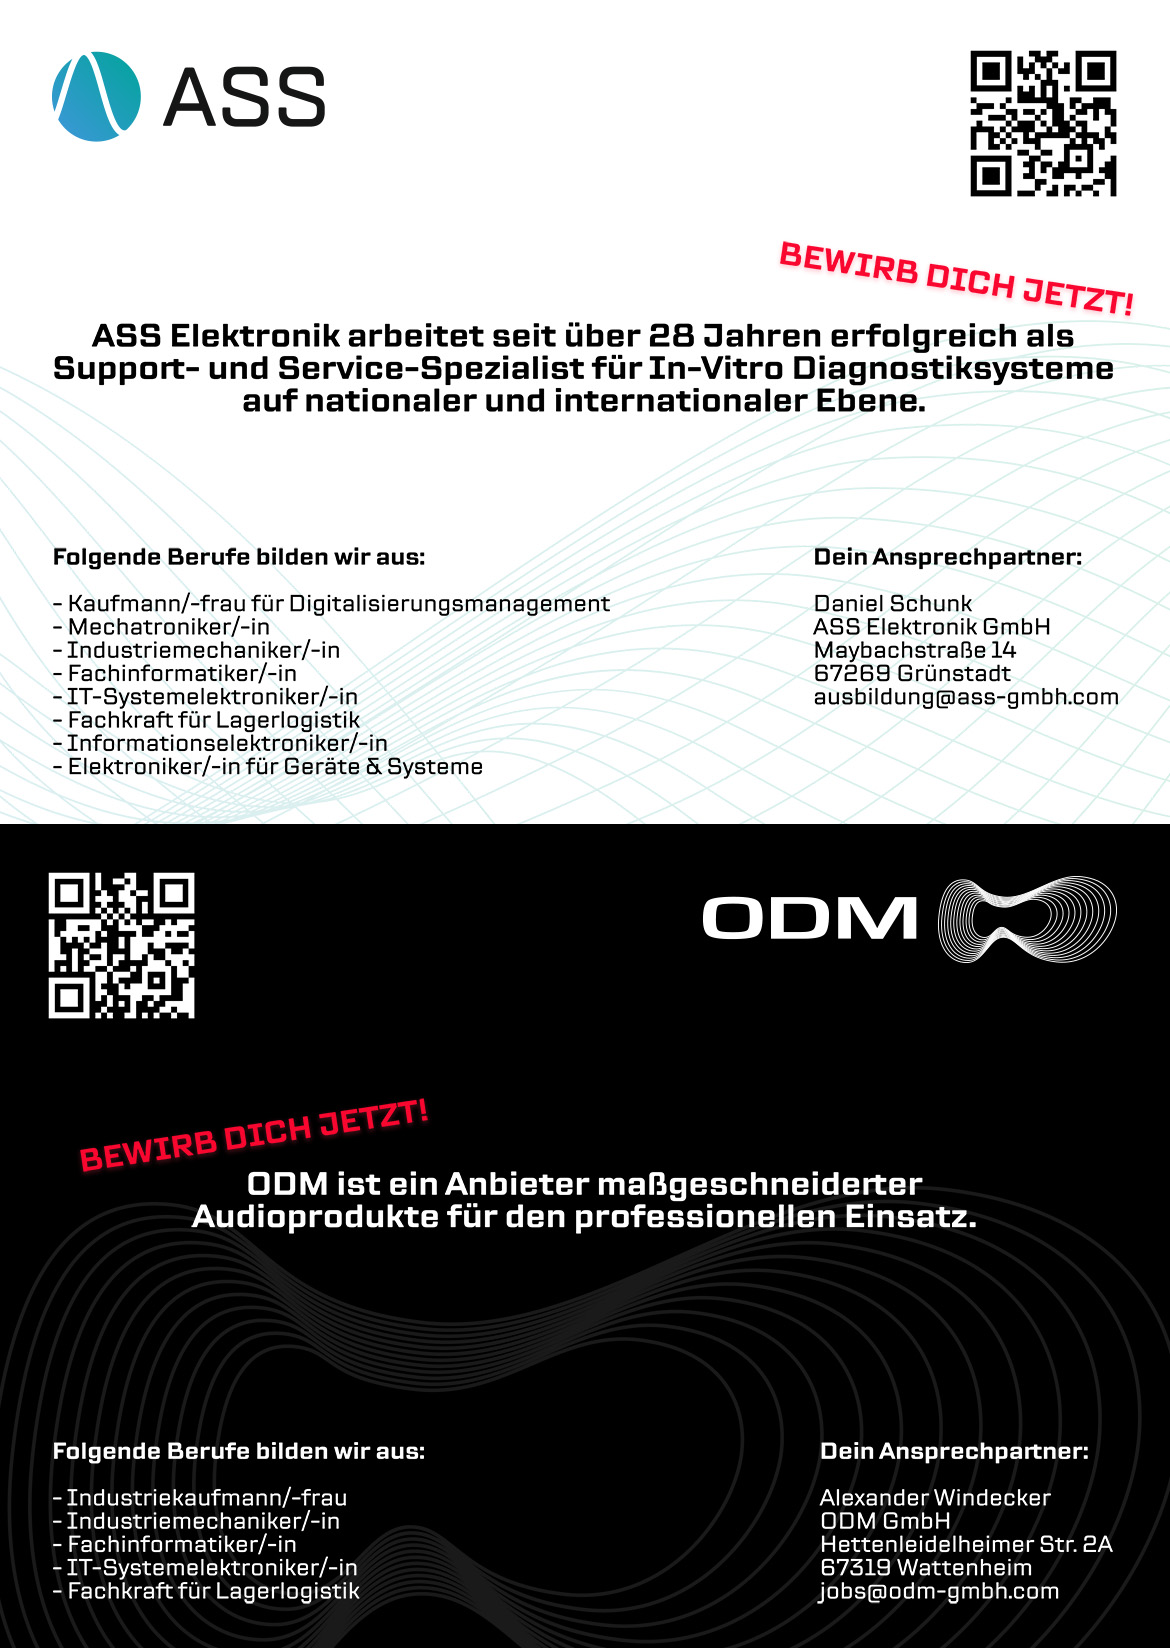 Ausbildungsplakat: ODM GmbH